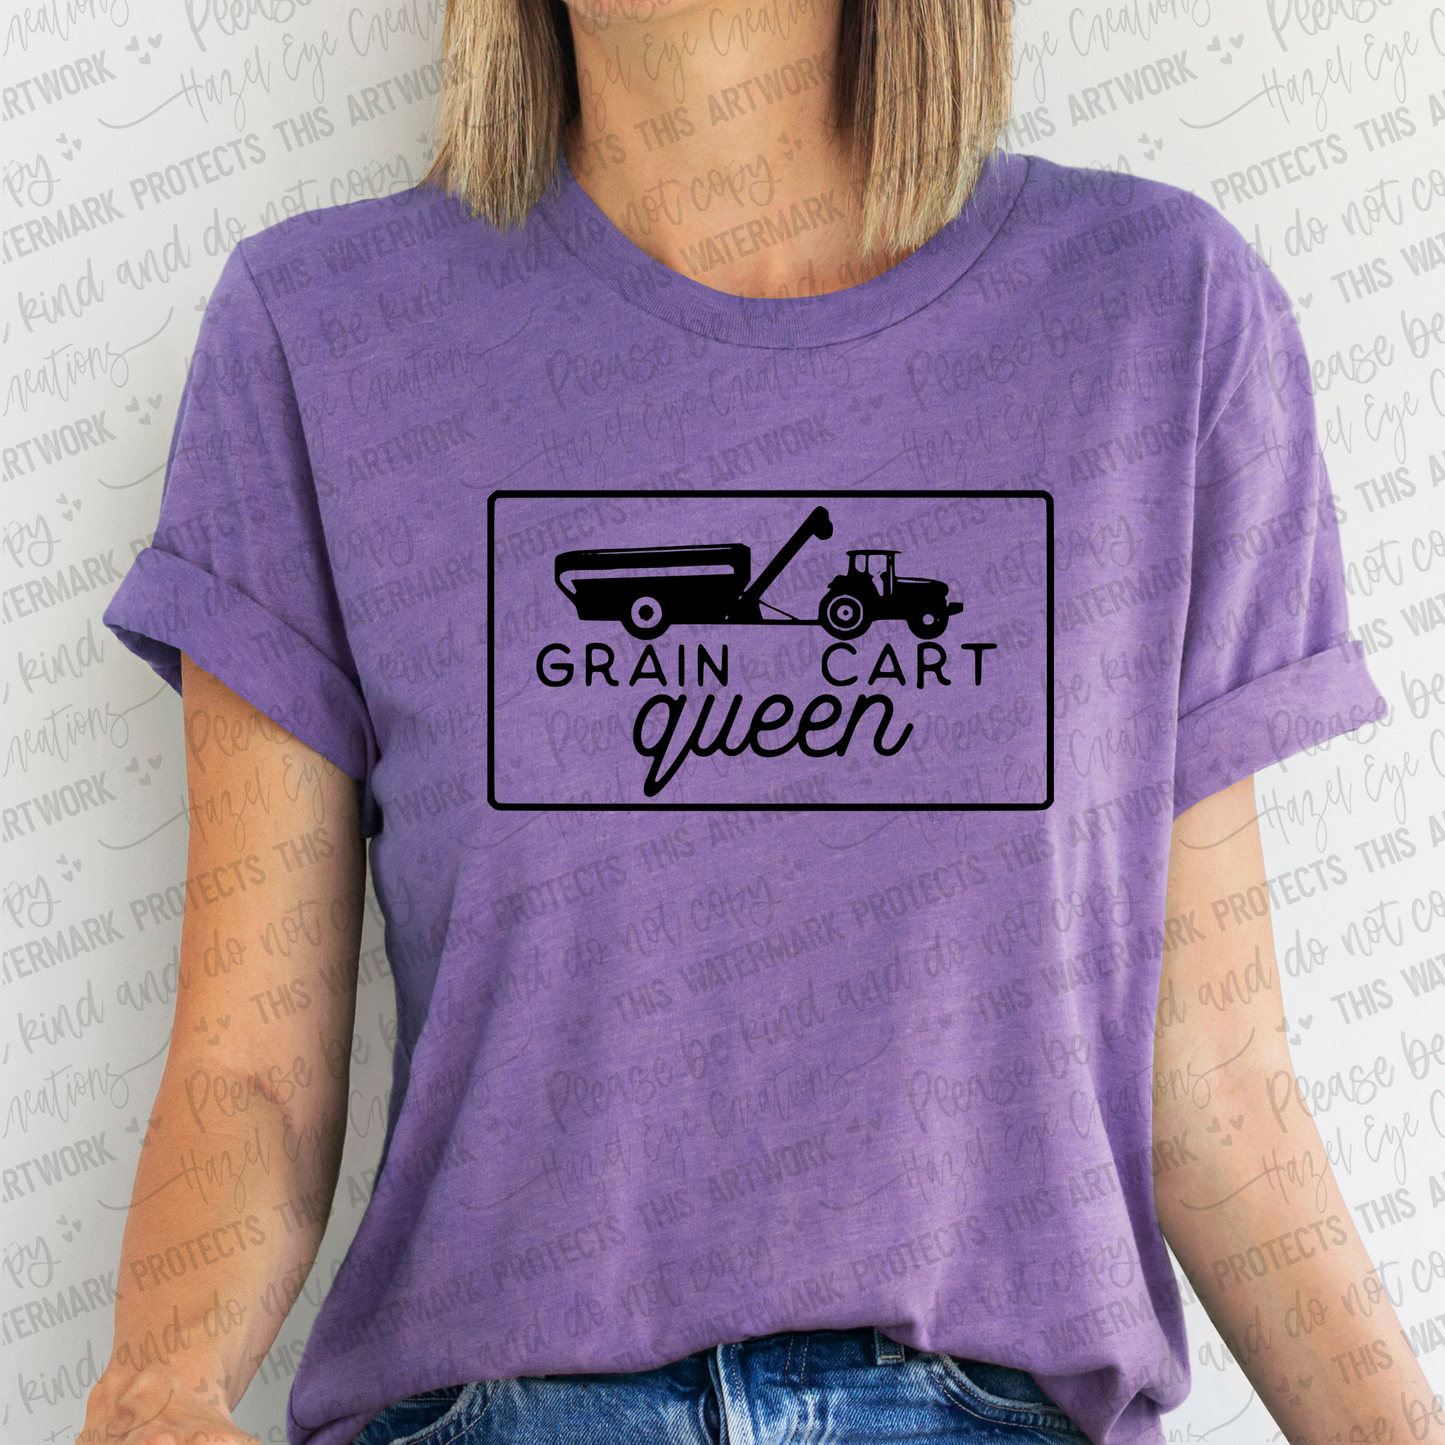 Grain cart queen